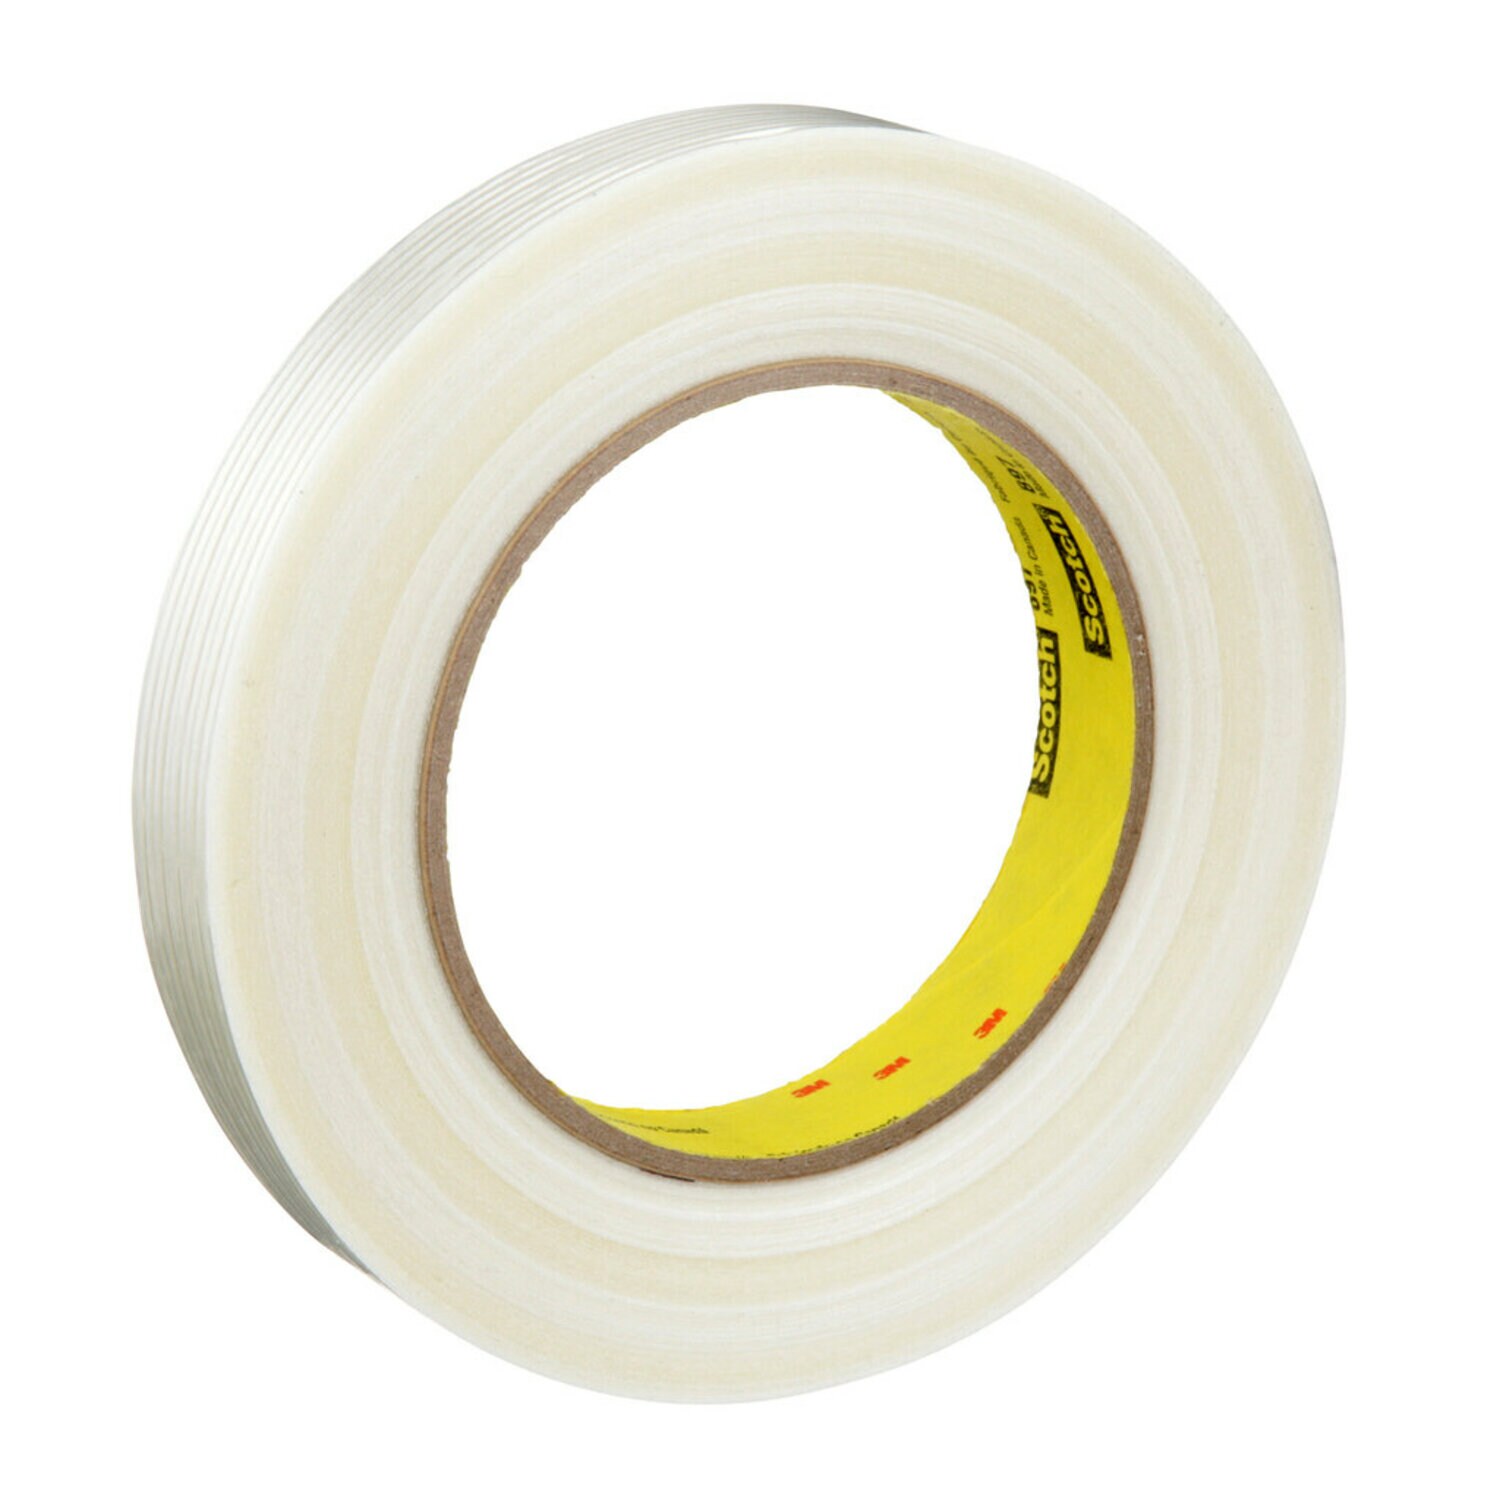 7000123440 - Scotch Filament Tape 897, Clear, 12 mm x 55 m, 5 mil, 72 rolls per case